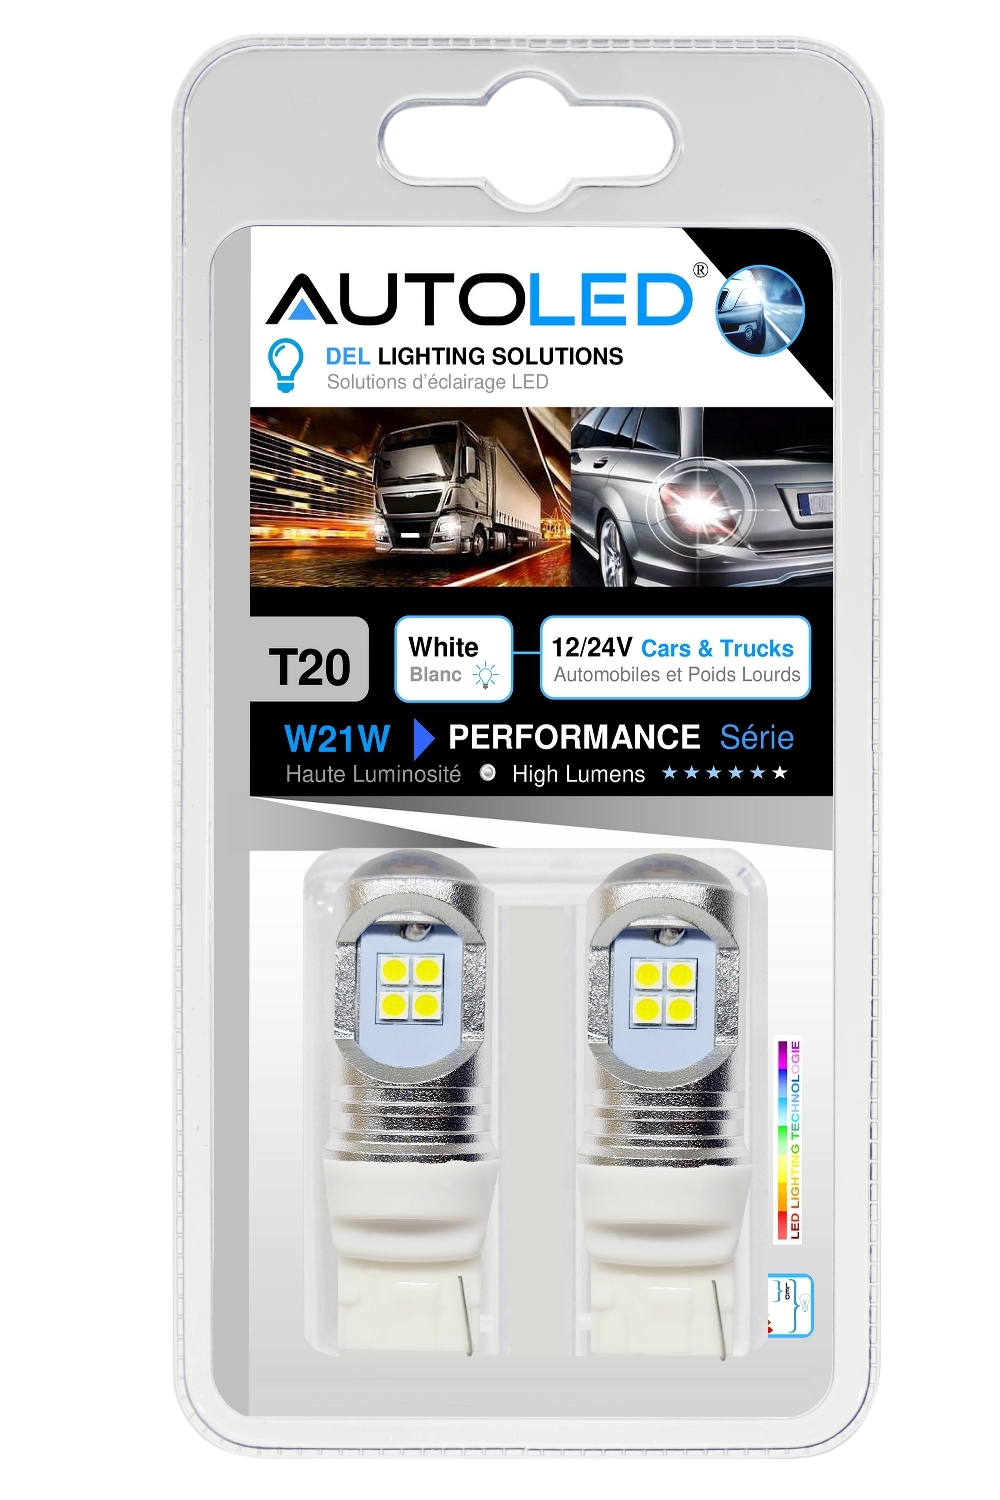 AMPOULE W21W 24V LED CAMION – 12V AUTOMOBILE -autoled-0305.6